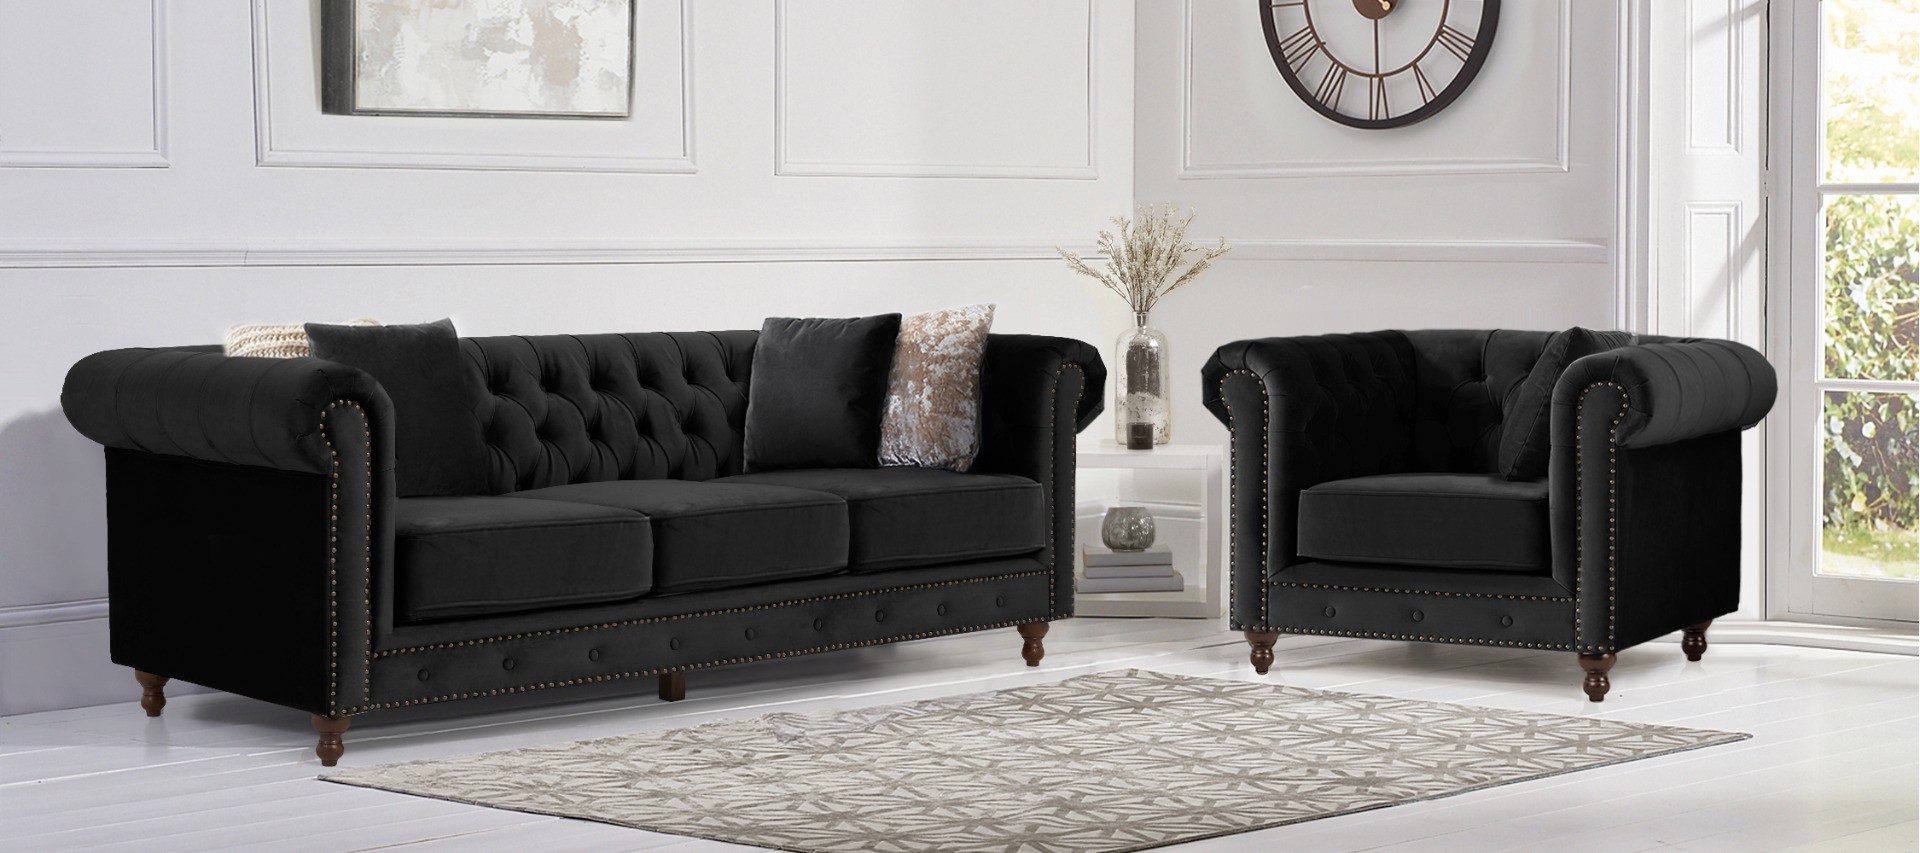 Photo 4 of Westminster chesterfield black velvet 3 seater sofa